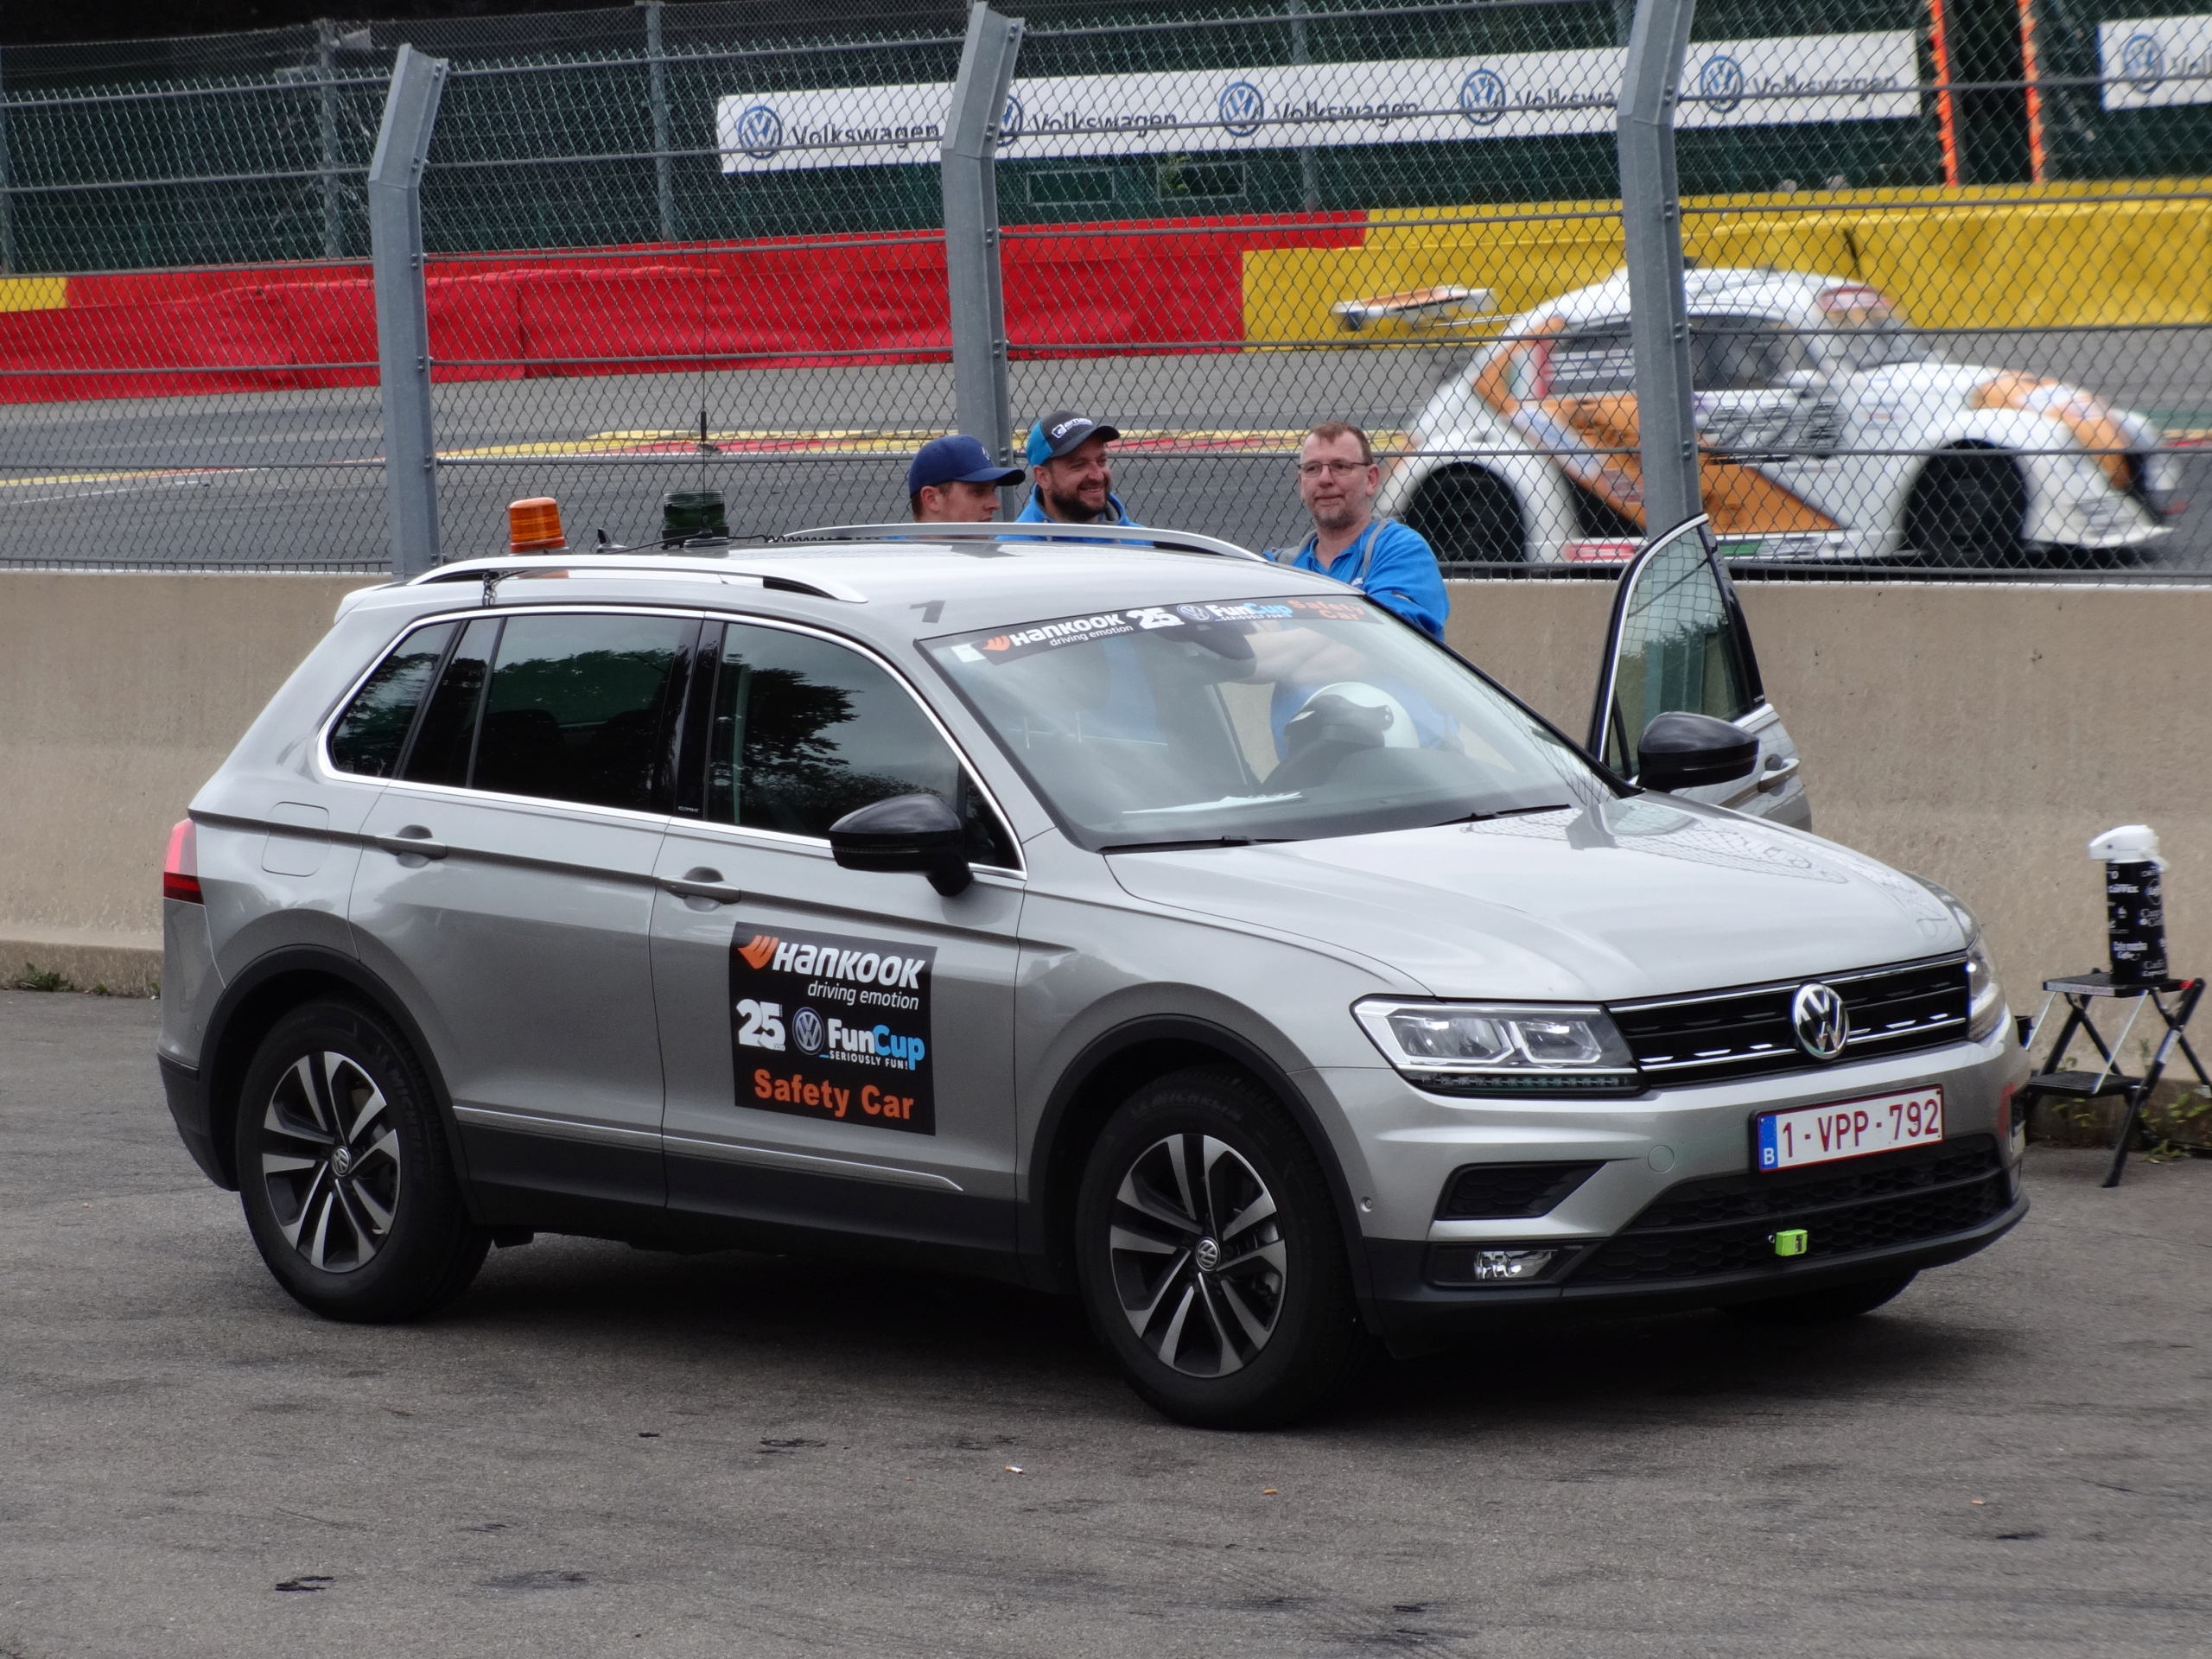 Circuit de Spa Francorchamps : 25h VW FunCup 2019 + photos Dsc00011